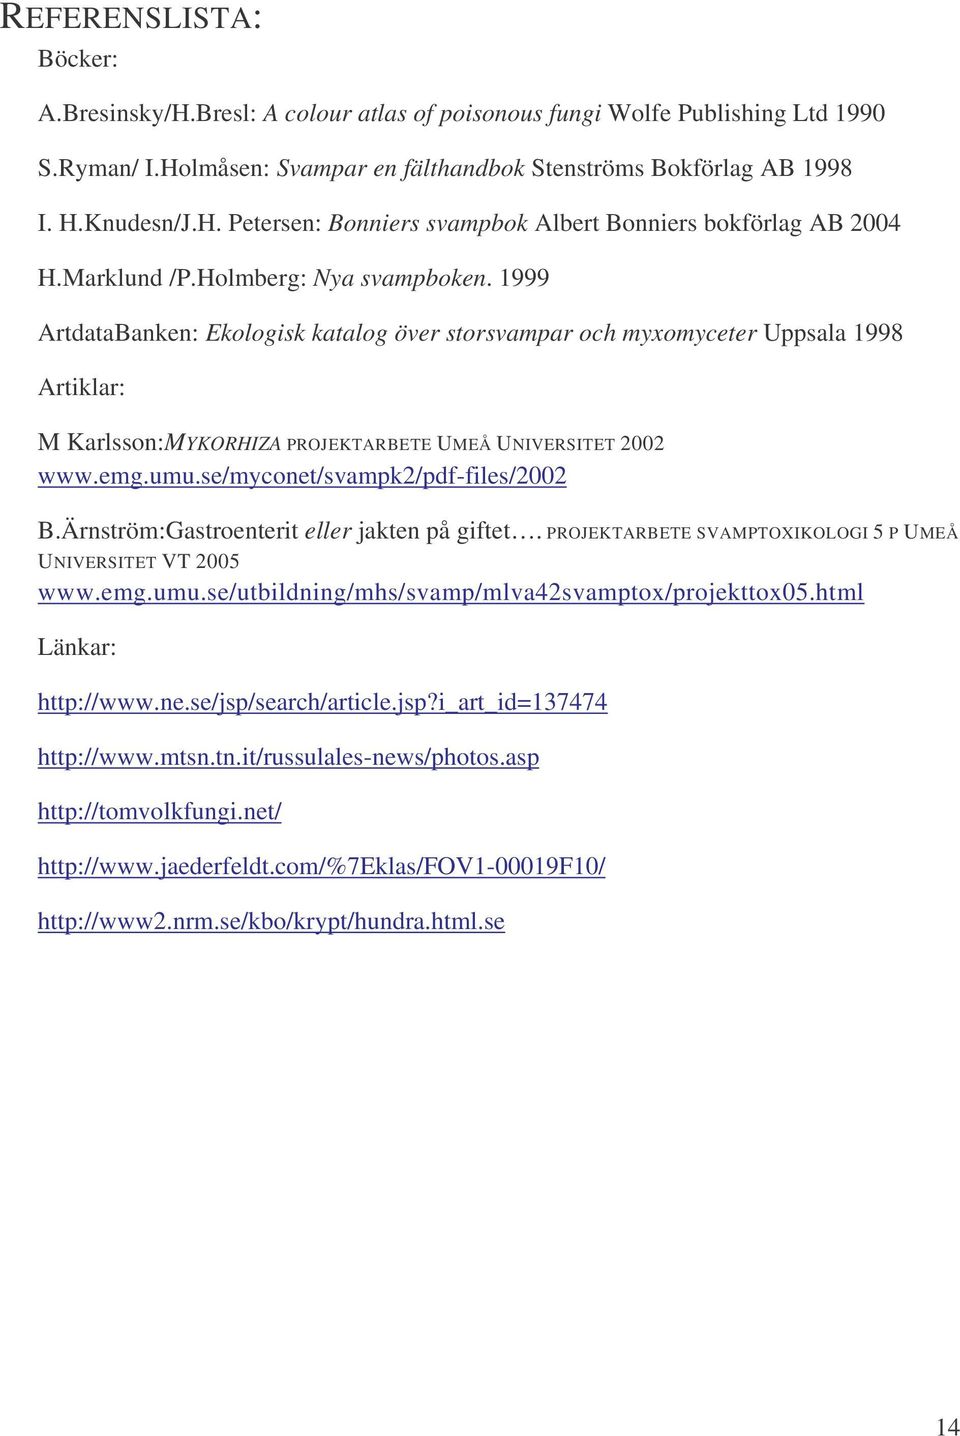 umu.se/myconet/svampk2/pdf-files/2002 B.Ärnström:Gastroenterit eller jakten på giftet. PROJEKTARBETE SVAMPTOXIKOLOGI 5 P UMEÅ UNIVERSITET VT 2005 www.emg.umu.se/utbildning/mhs/svamp/mlva42svamptox/projekttox05.